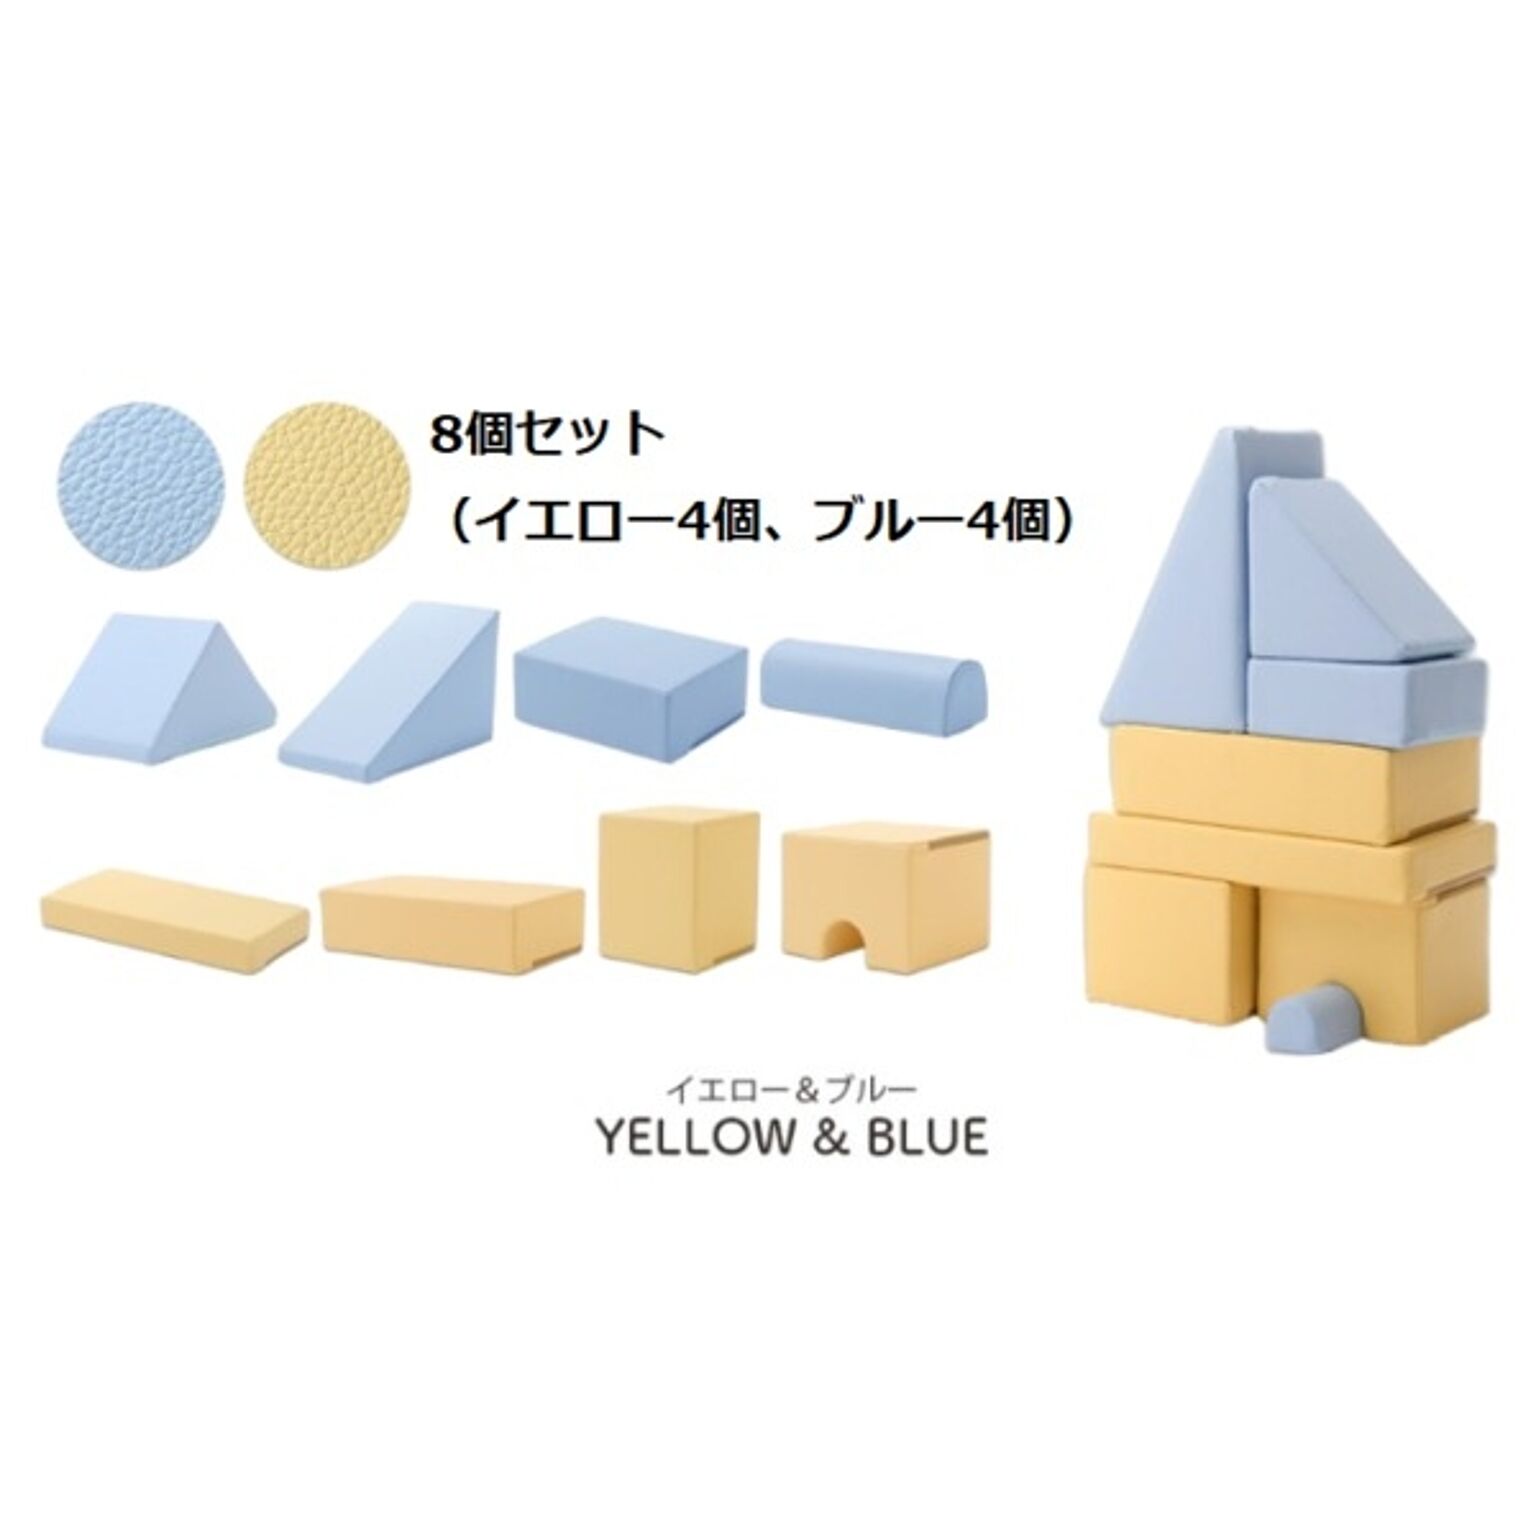 プレイクッション/知育玩具 【ブルー/イエロー 8個セット ブルー4個・イエロー4個】 ウレタンフォーム 日本製 〔リビング〕【代引不可】